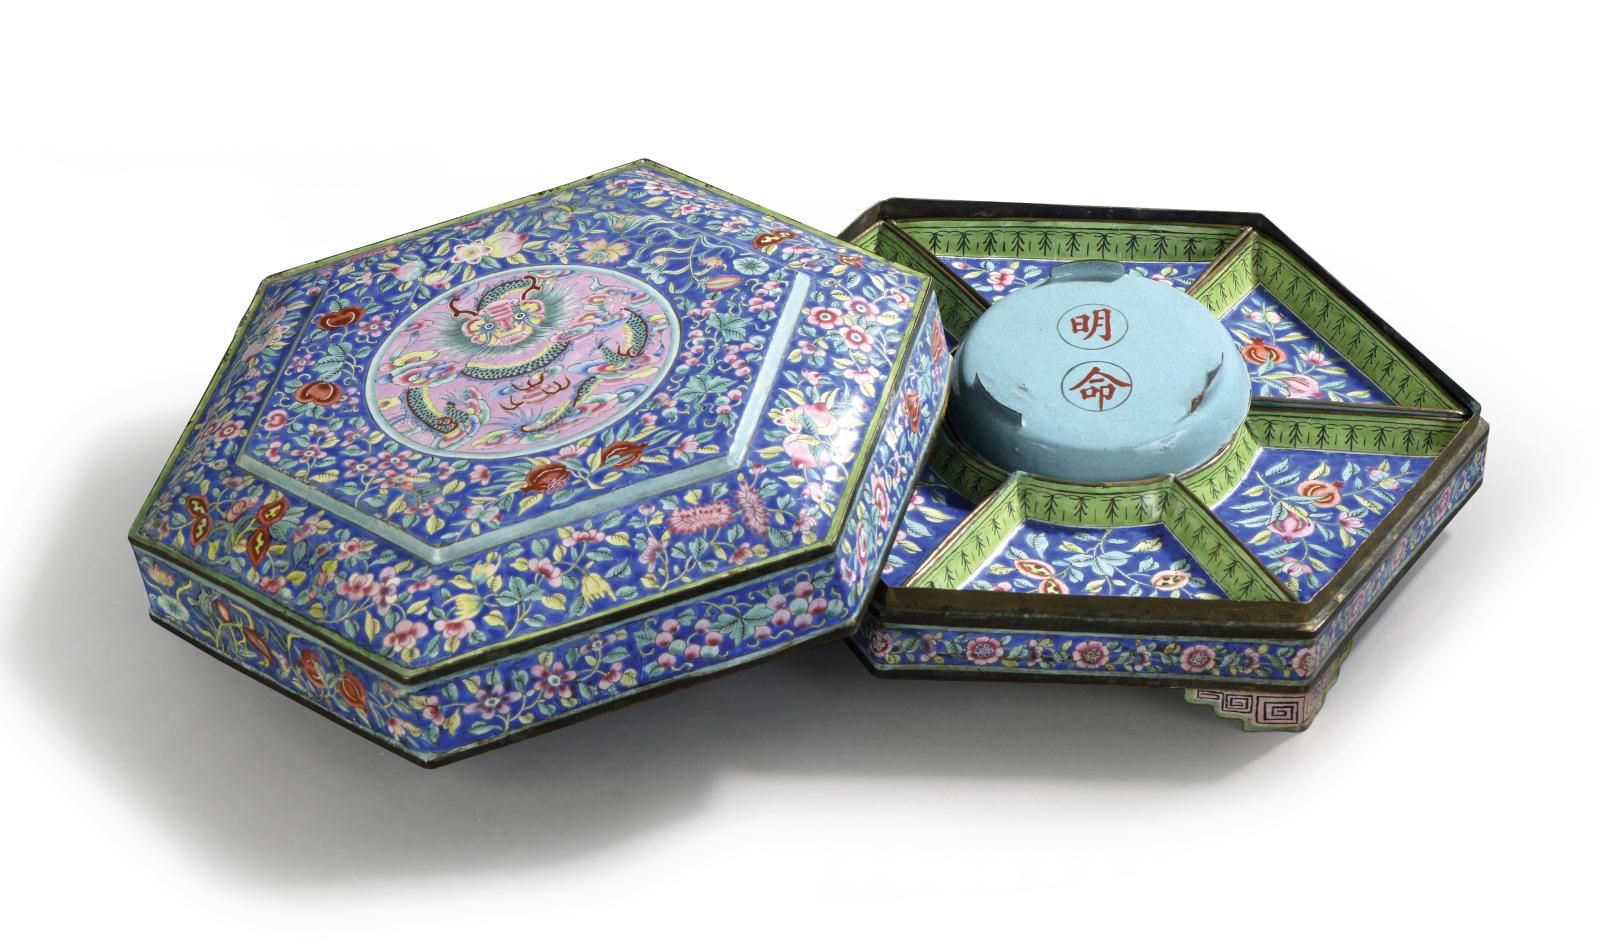 Parmi les souvenirs de la cour impériale de Hué dispersés, cette boîte à compartiments ornée d’émaux polychromes se démarquait à 38 100 €. Elle appart